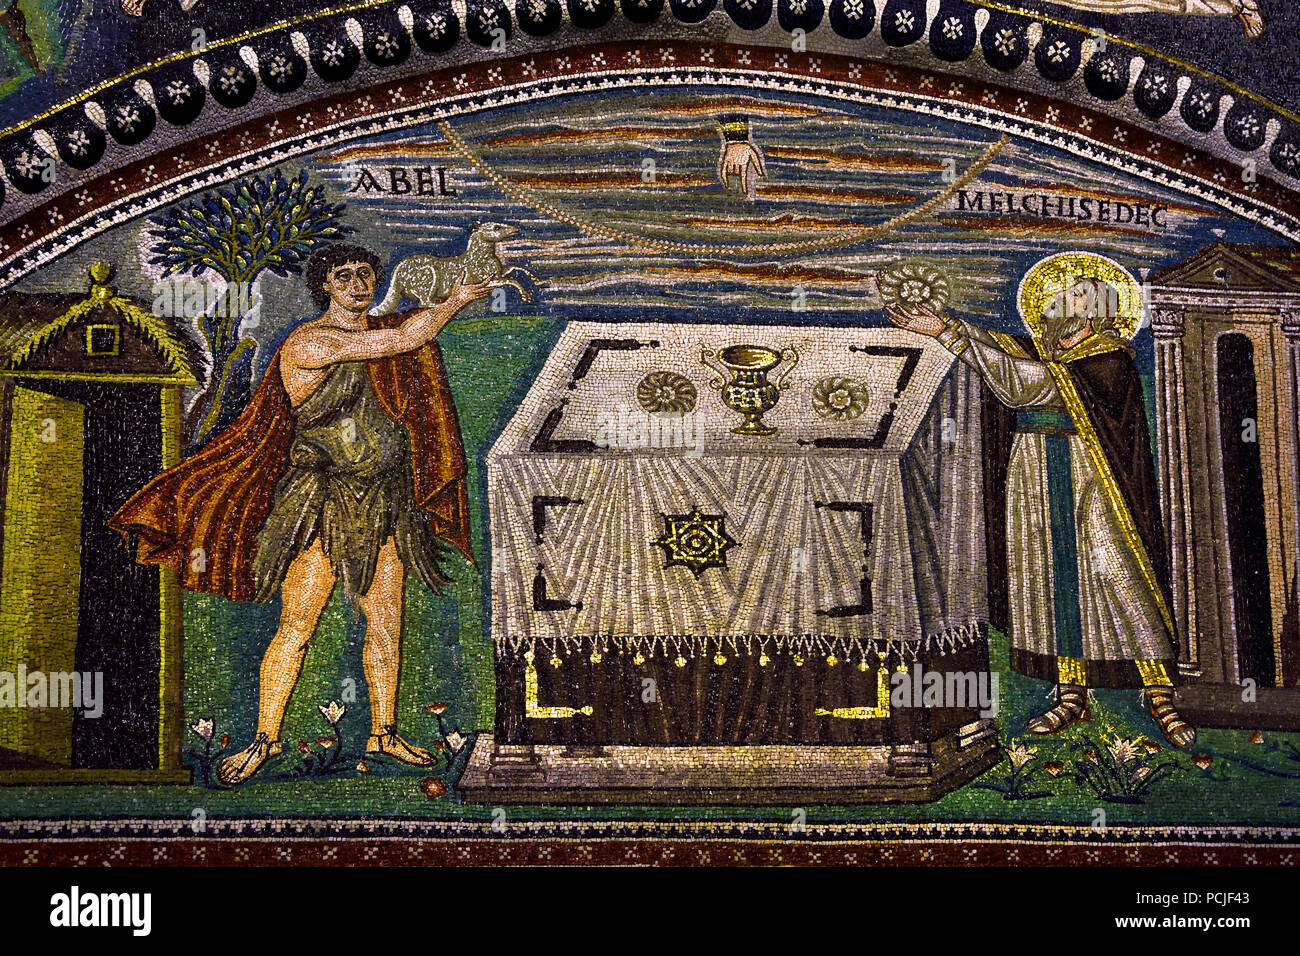 Basilika von San Vitale 547 AD 6. Jahrhundert in Ravenna - Mosaiken (späte römische und byzantinische Architektur,) Emilia-Romagna - Nördliche Italien. (UNESCO Weltkulturerbe) Stockfoto